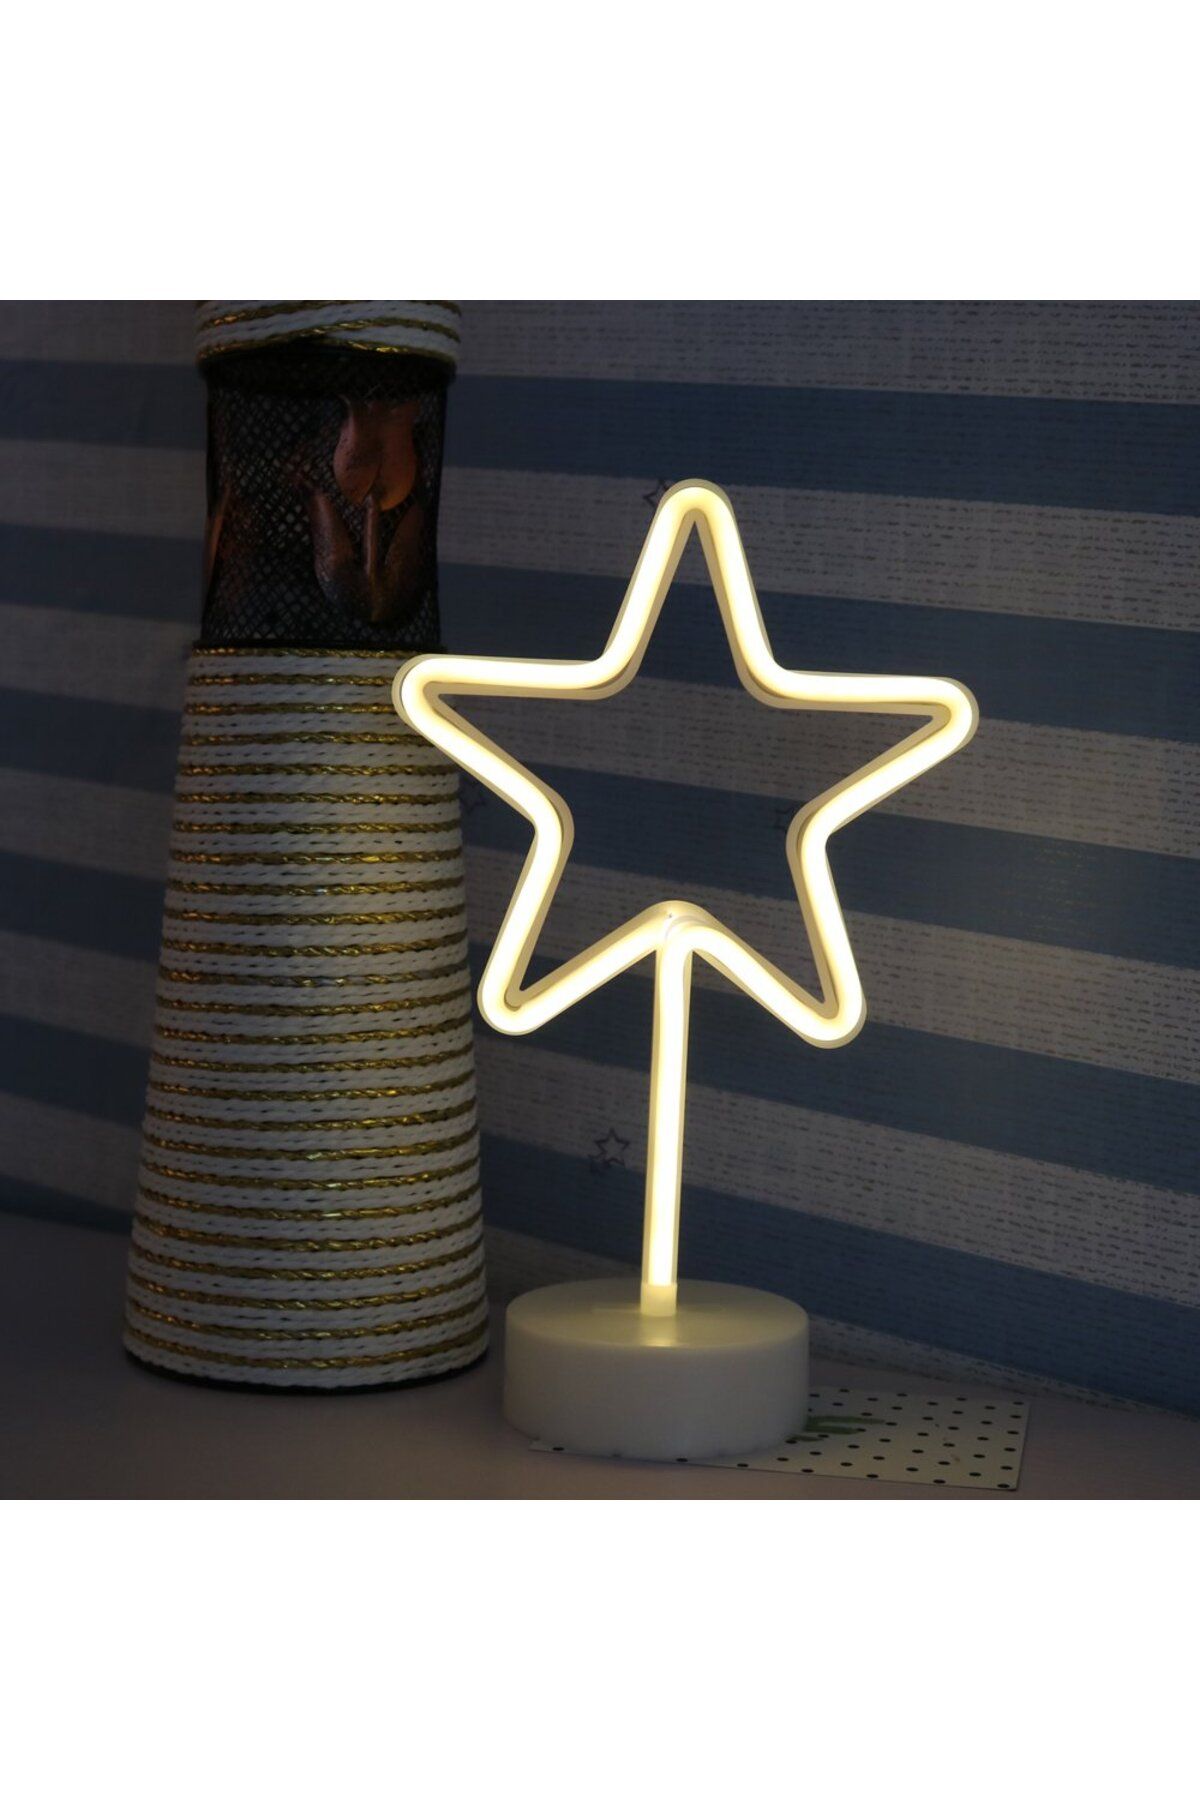 ERTEN Sarı Yıldız Model Neon Led Işıklı Masa Lambası Dekoratif Aydınlatma Gece Lambası